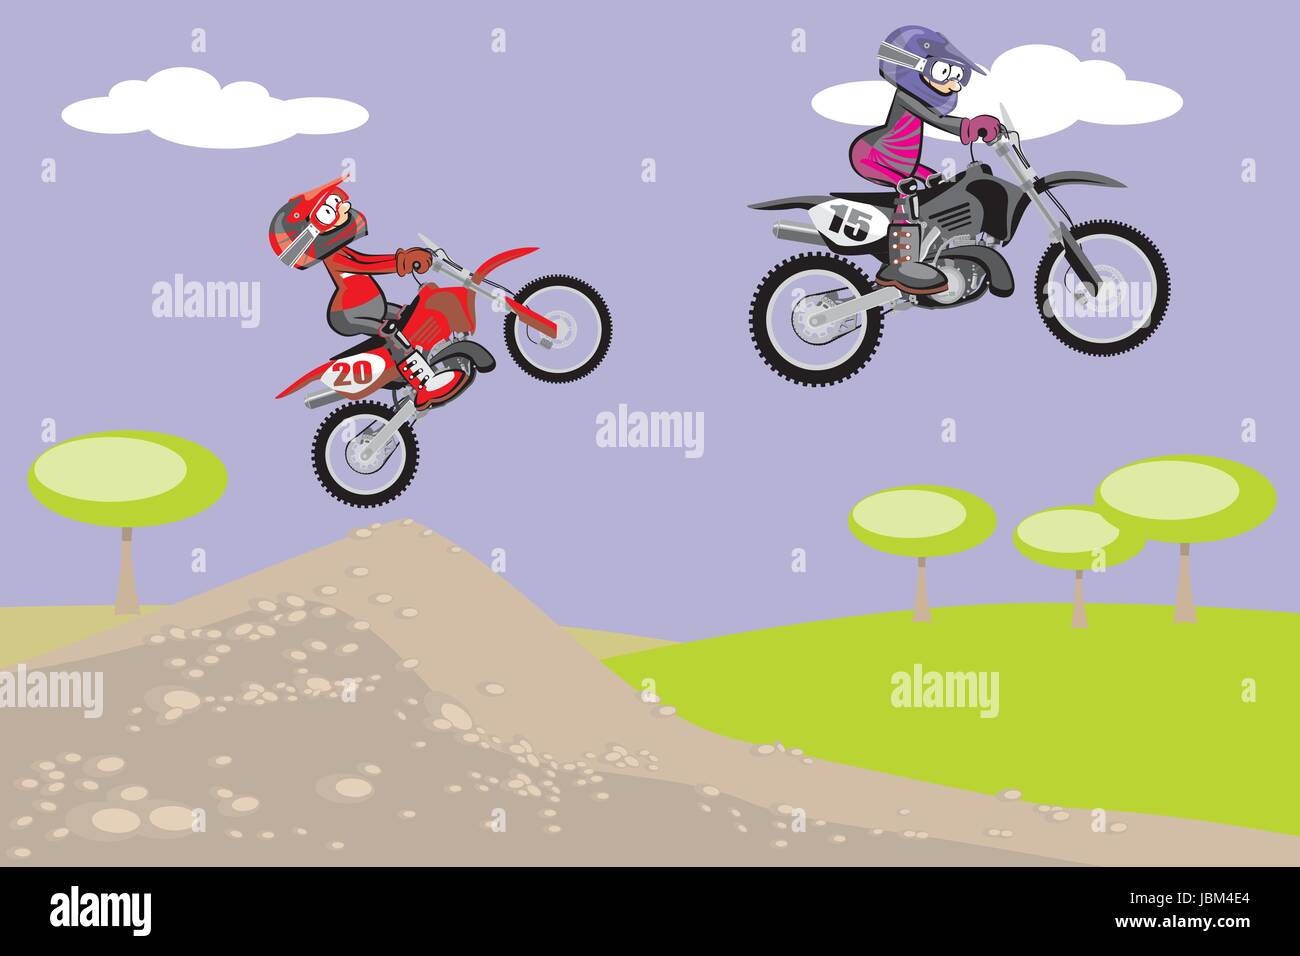 Le Coureur de motocross dans la voie de la poussière. Style de dessin animé.  Vector illustration conceptuelle à propos de sport Racer Motocross Motocross.dans  la voie de la poussière. Style Cartoon Image